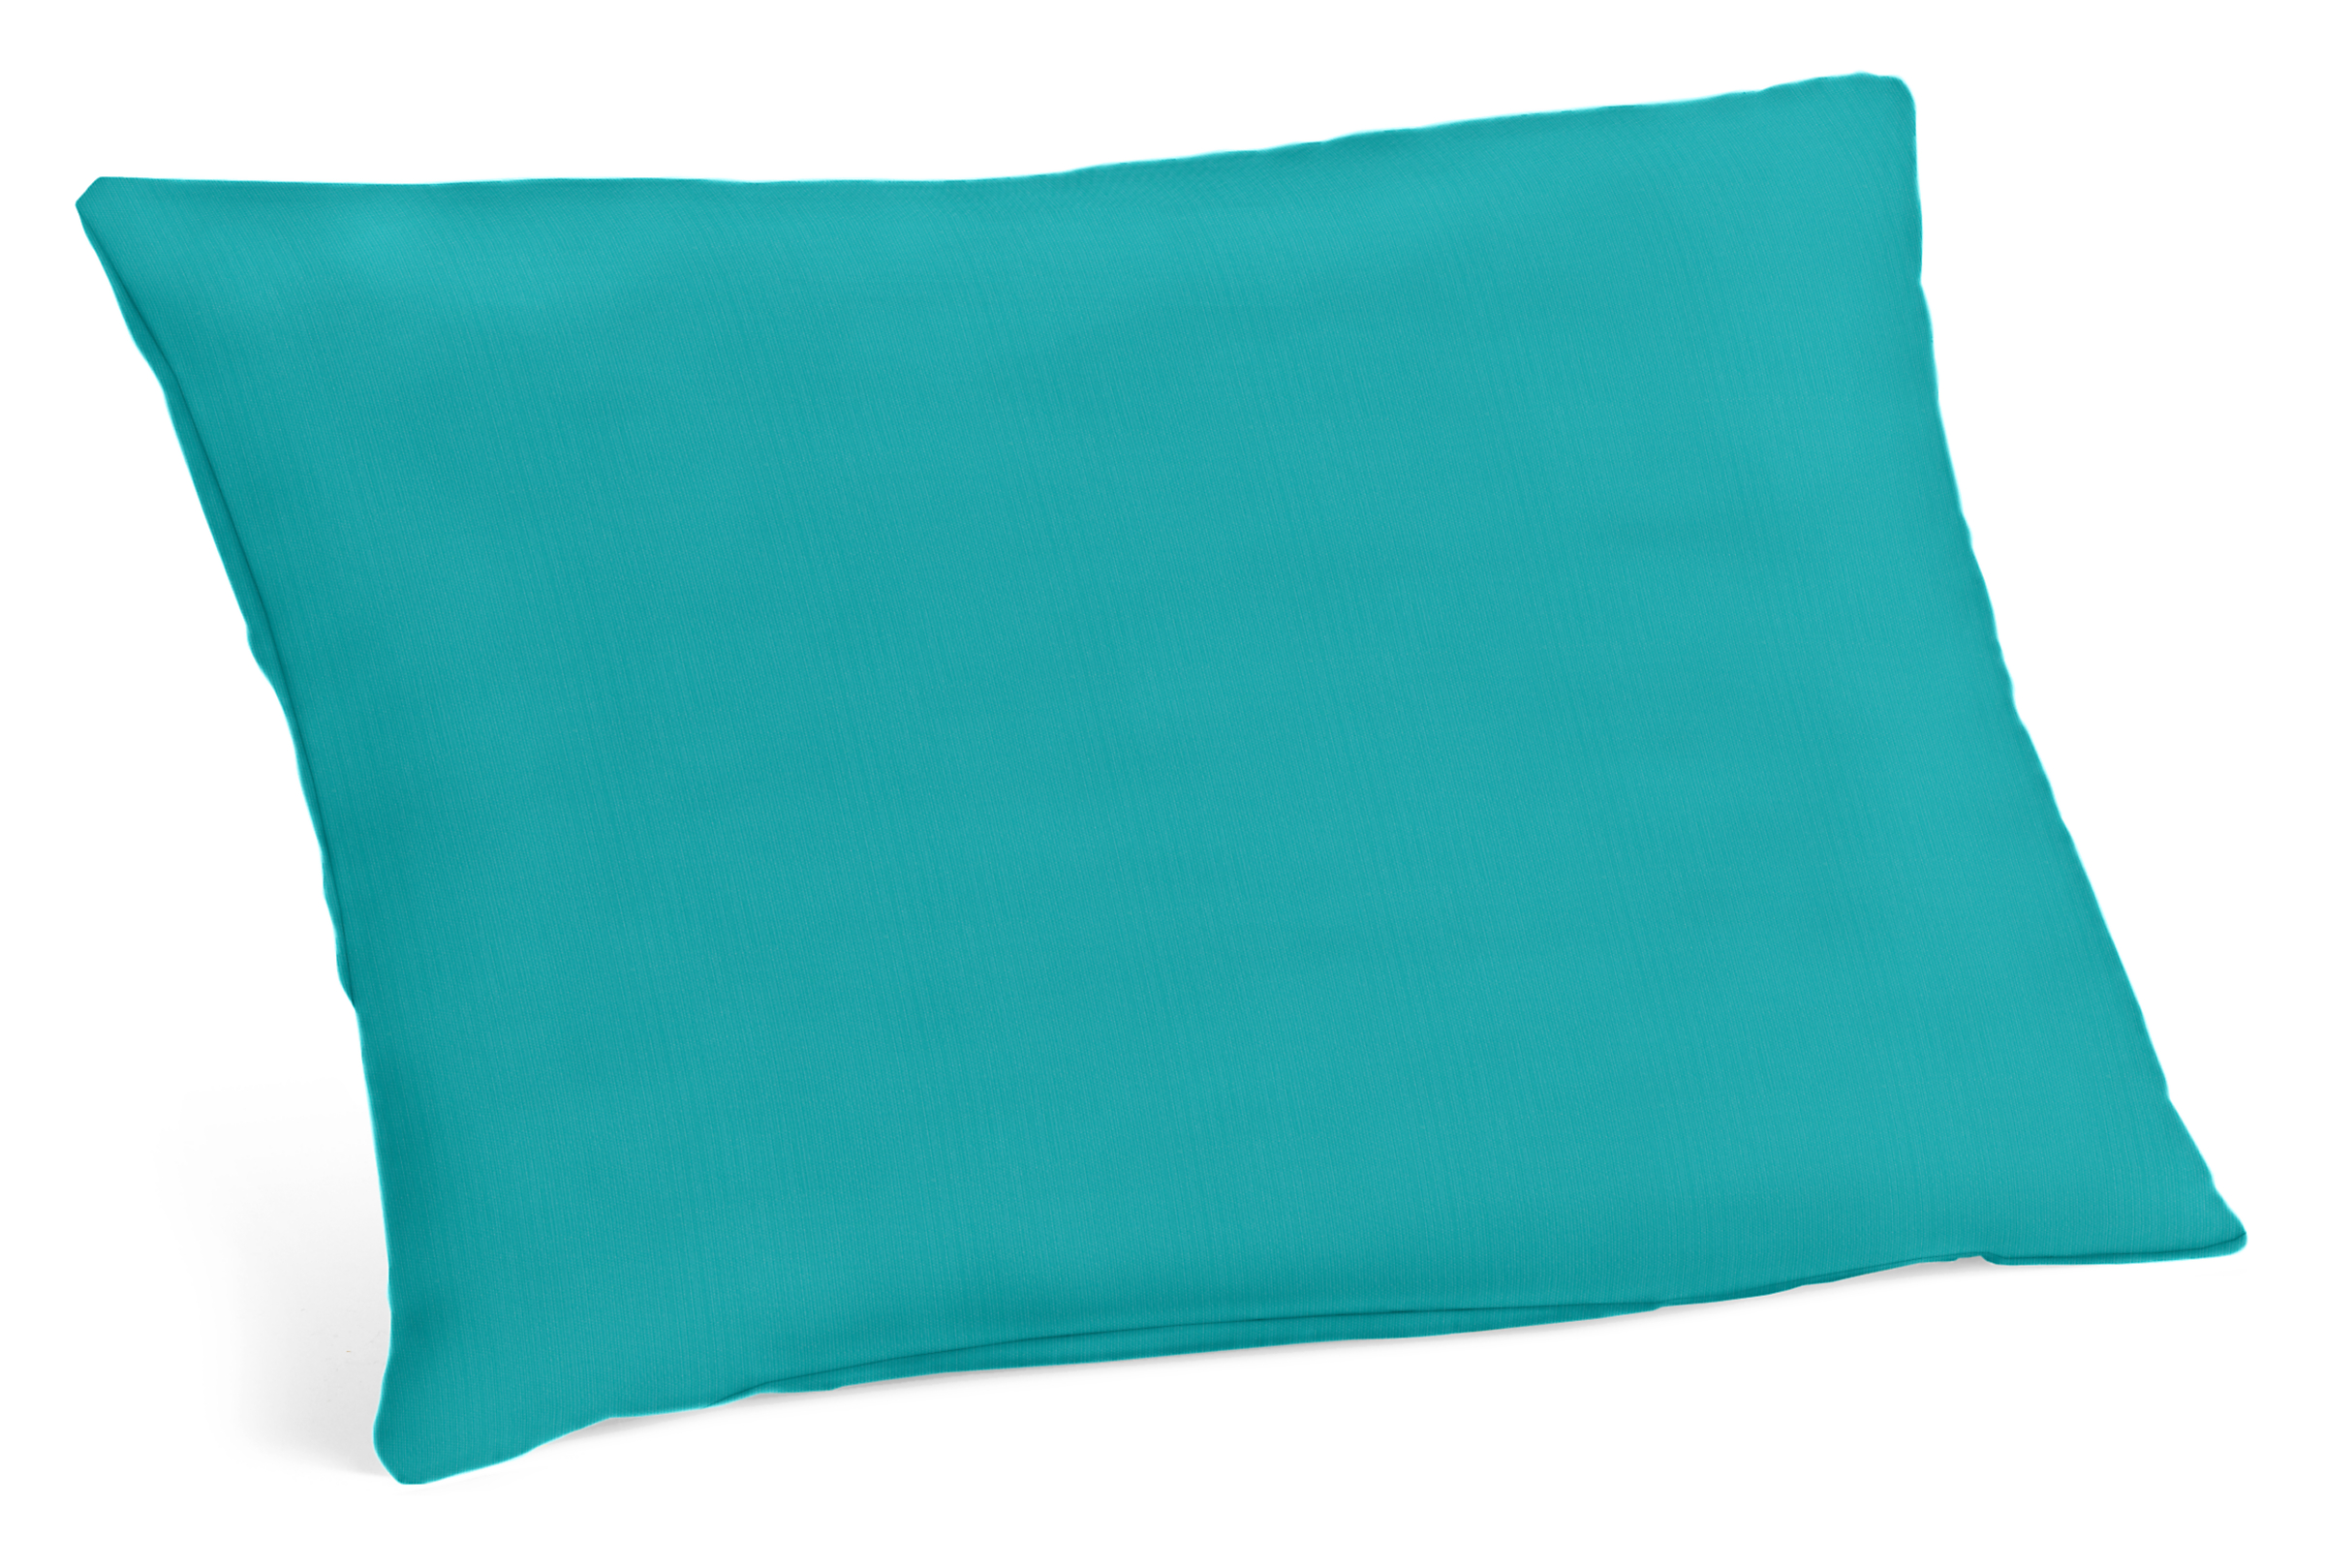 Hue 20w 13h Outdoor Pillow in Sunbrella Canvas Ocean